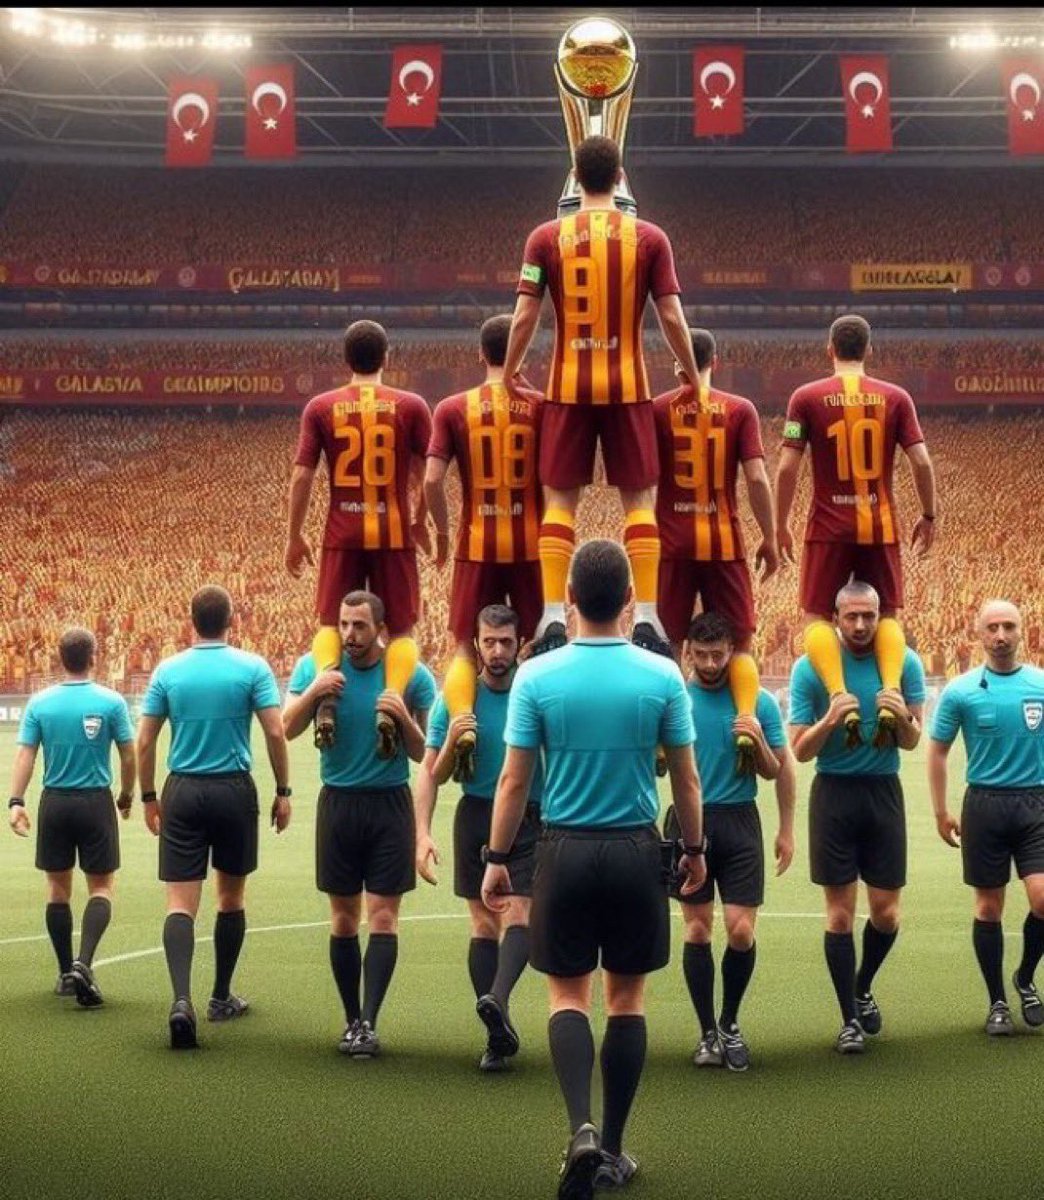 Yapay zekaya 2023-2024 Türkiye Futbol ligi şampiyonu nasıl şampiyon oldu yazdım. 

Sonuç;